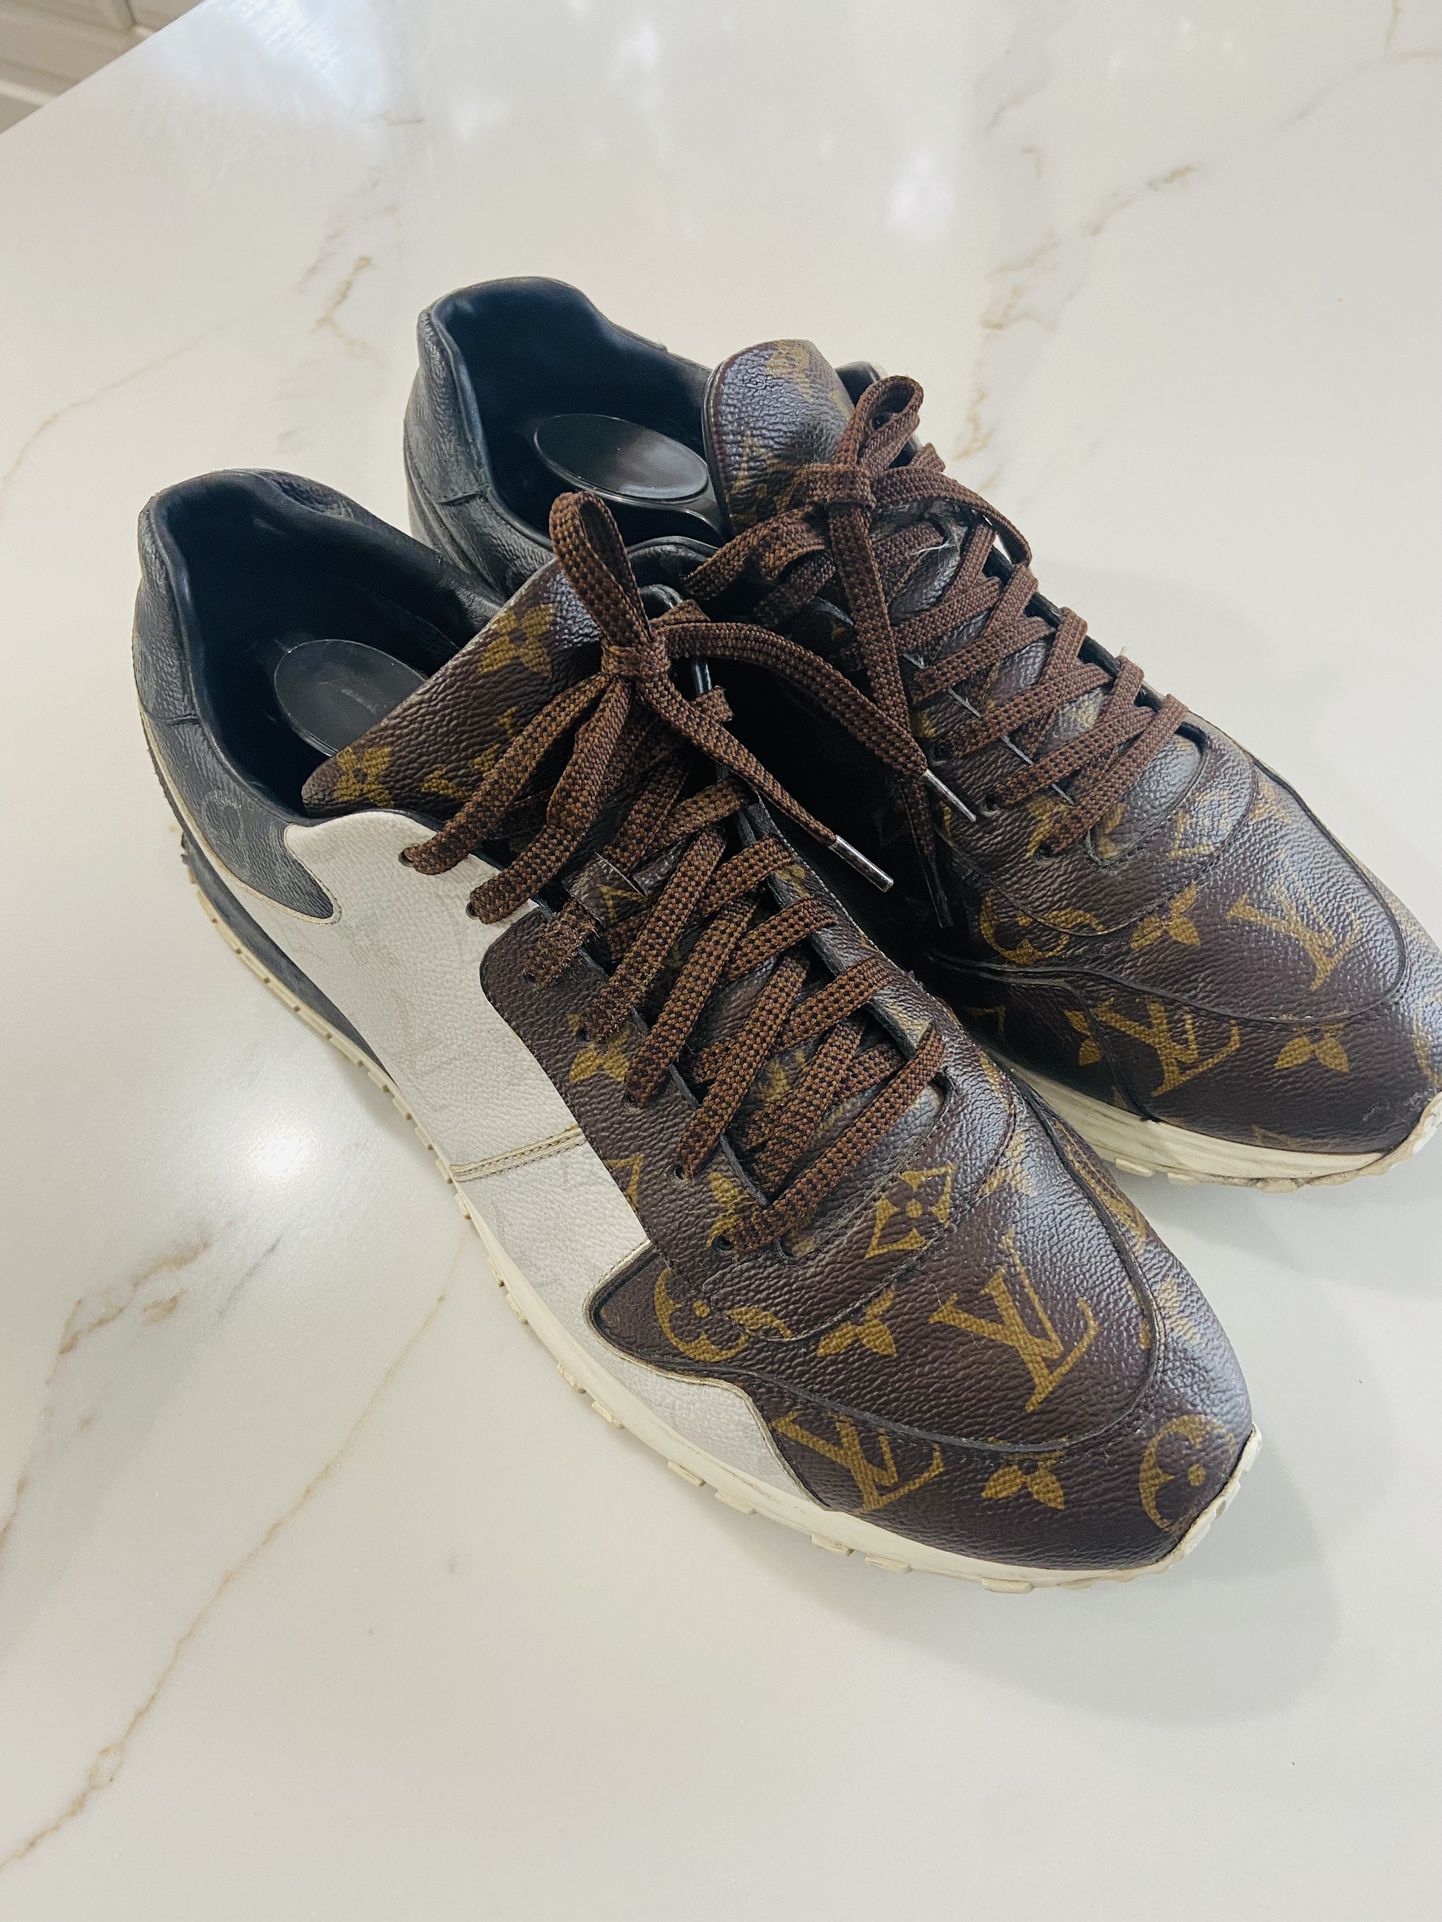 Louis Vuitton MONOGRAM Run Away Sneaker (1A3N7W)